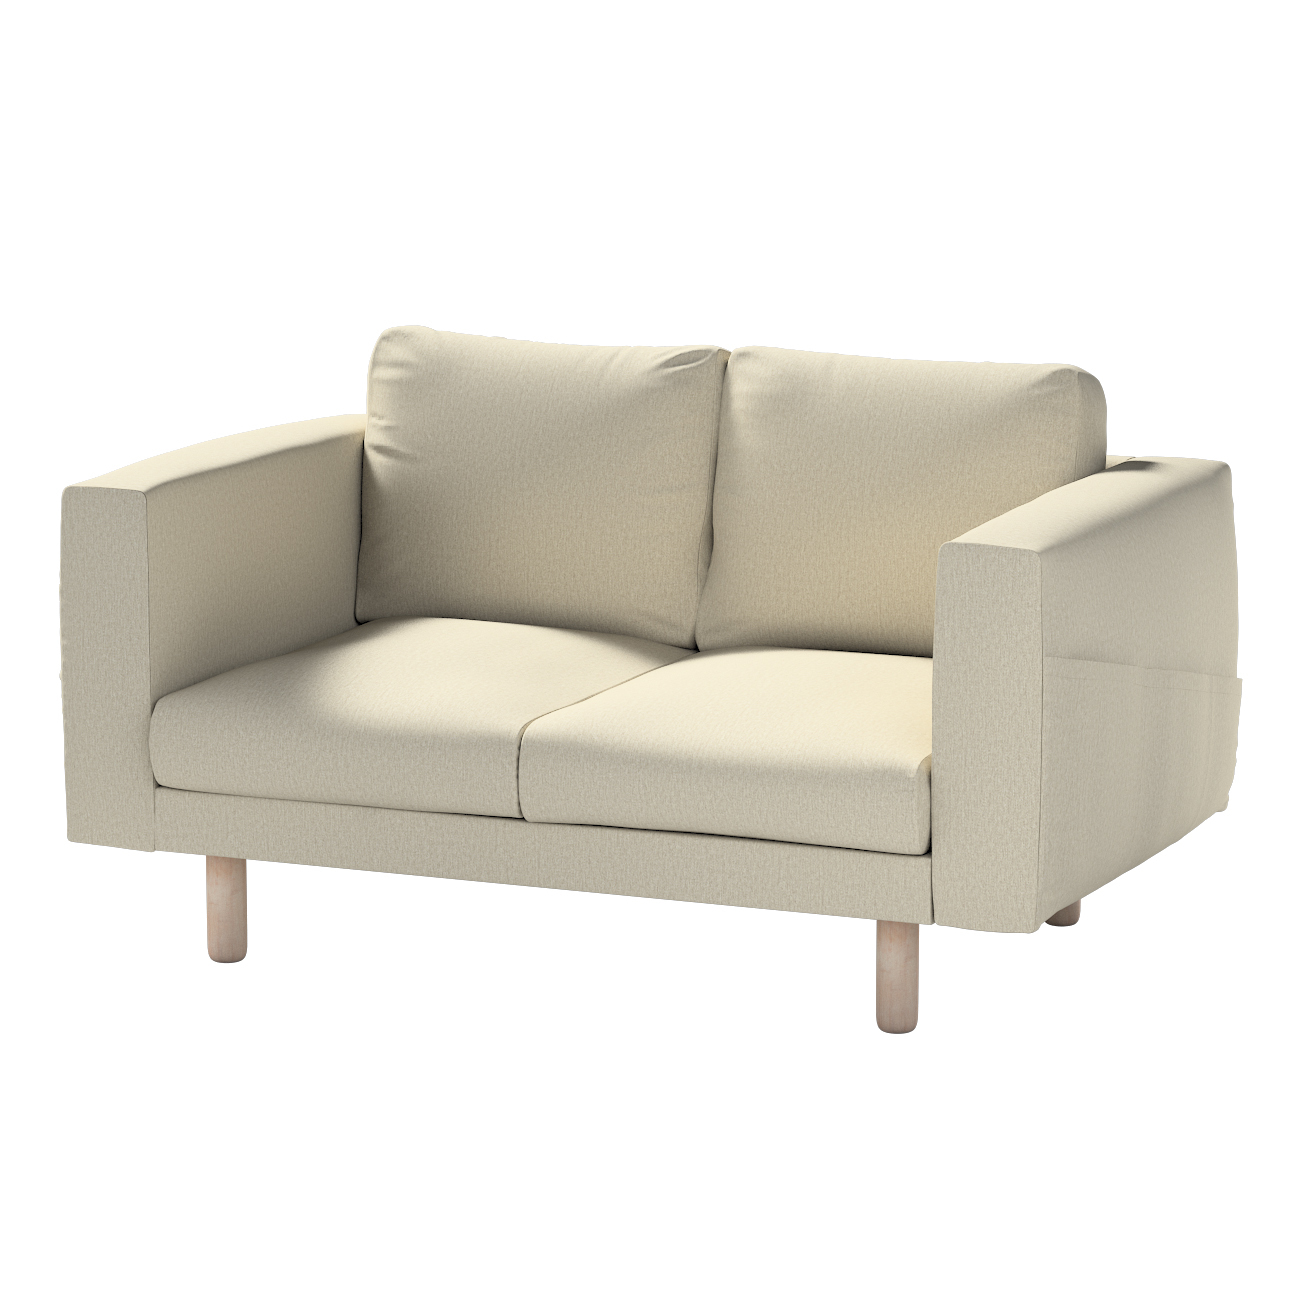 Bezug für Norsborg 2-Sitzer Sofa, beige-grau, Norsborg 2-Sitzer Sofabezug, günstig online kaufen